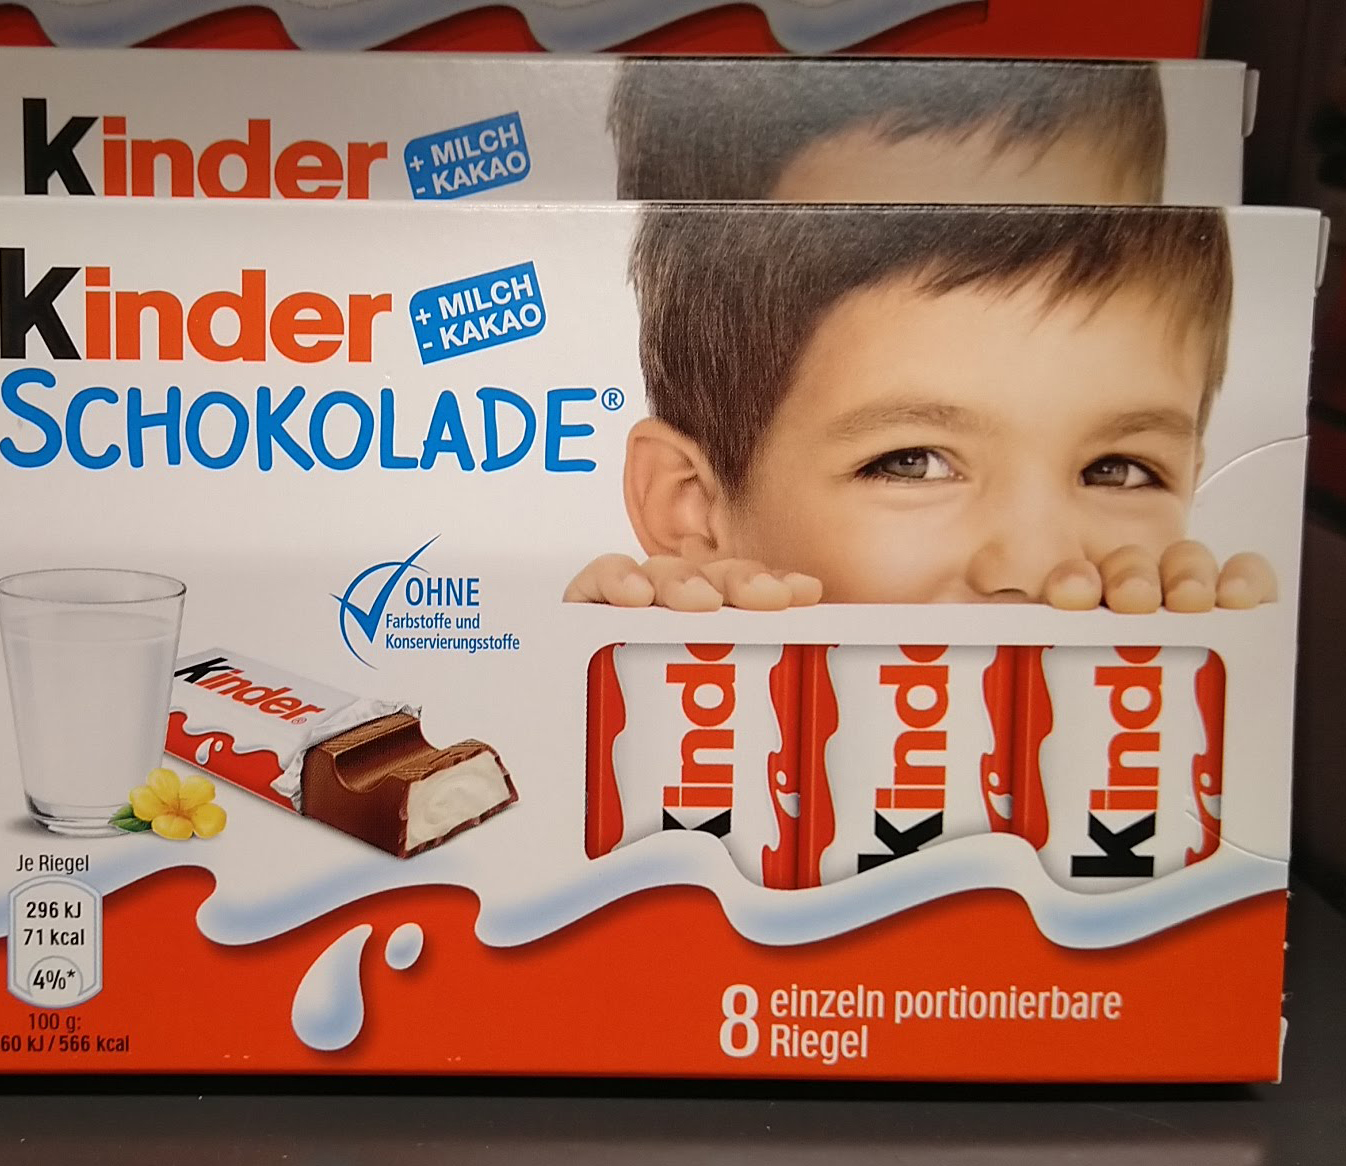 Kinderschokolade: Zauberstift und Stifteset gratis - Aktionscode eingeben